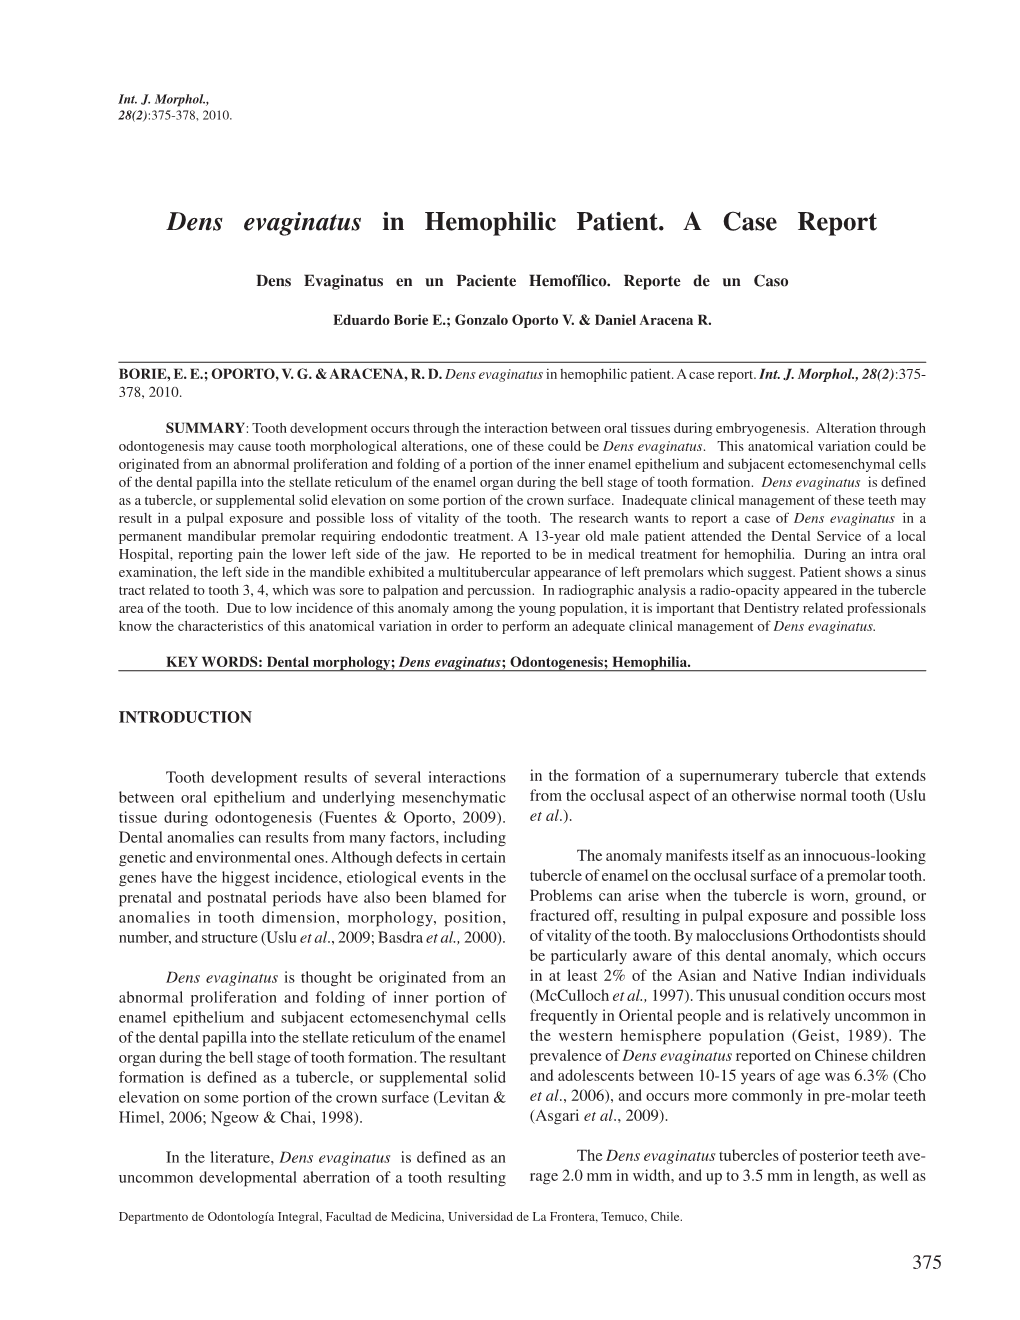 Dens Evaginatus in Hemophilic Patient. a Case Report